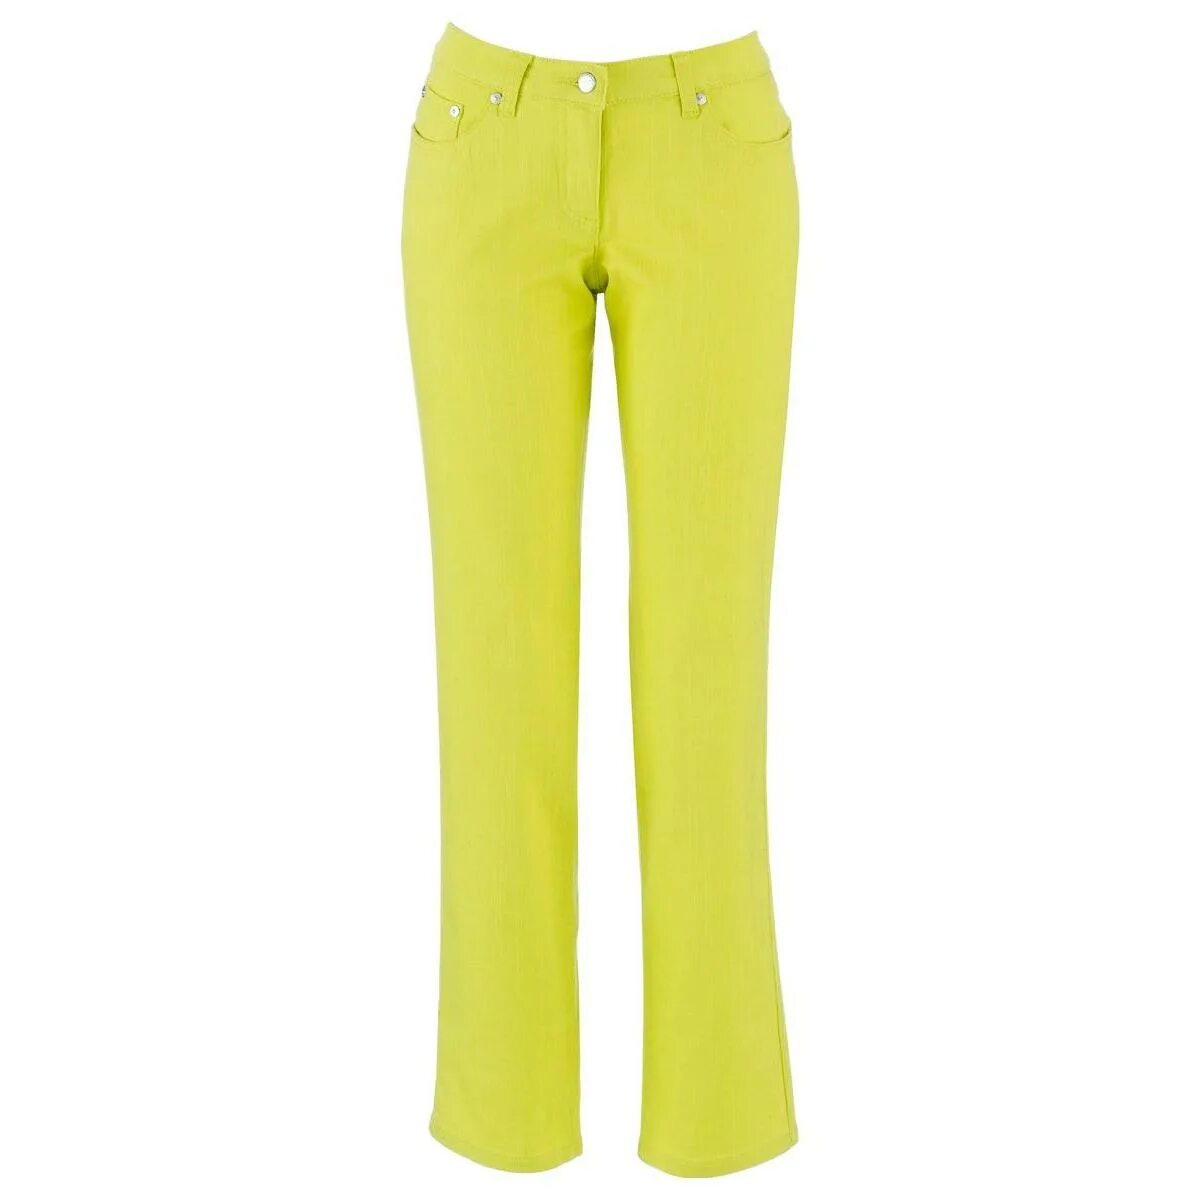 Где купить брюки в москве. Брюки пляжные Versace. Летние женские брюки Бонприкс. Light Yellow Capri Pants. Бонприкс брюки из экокожи зеленые.